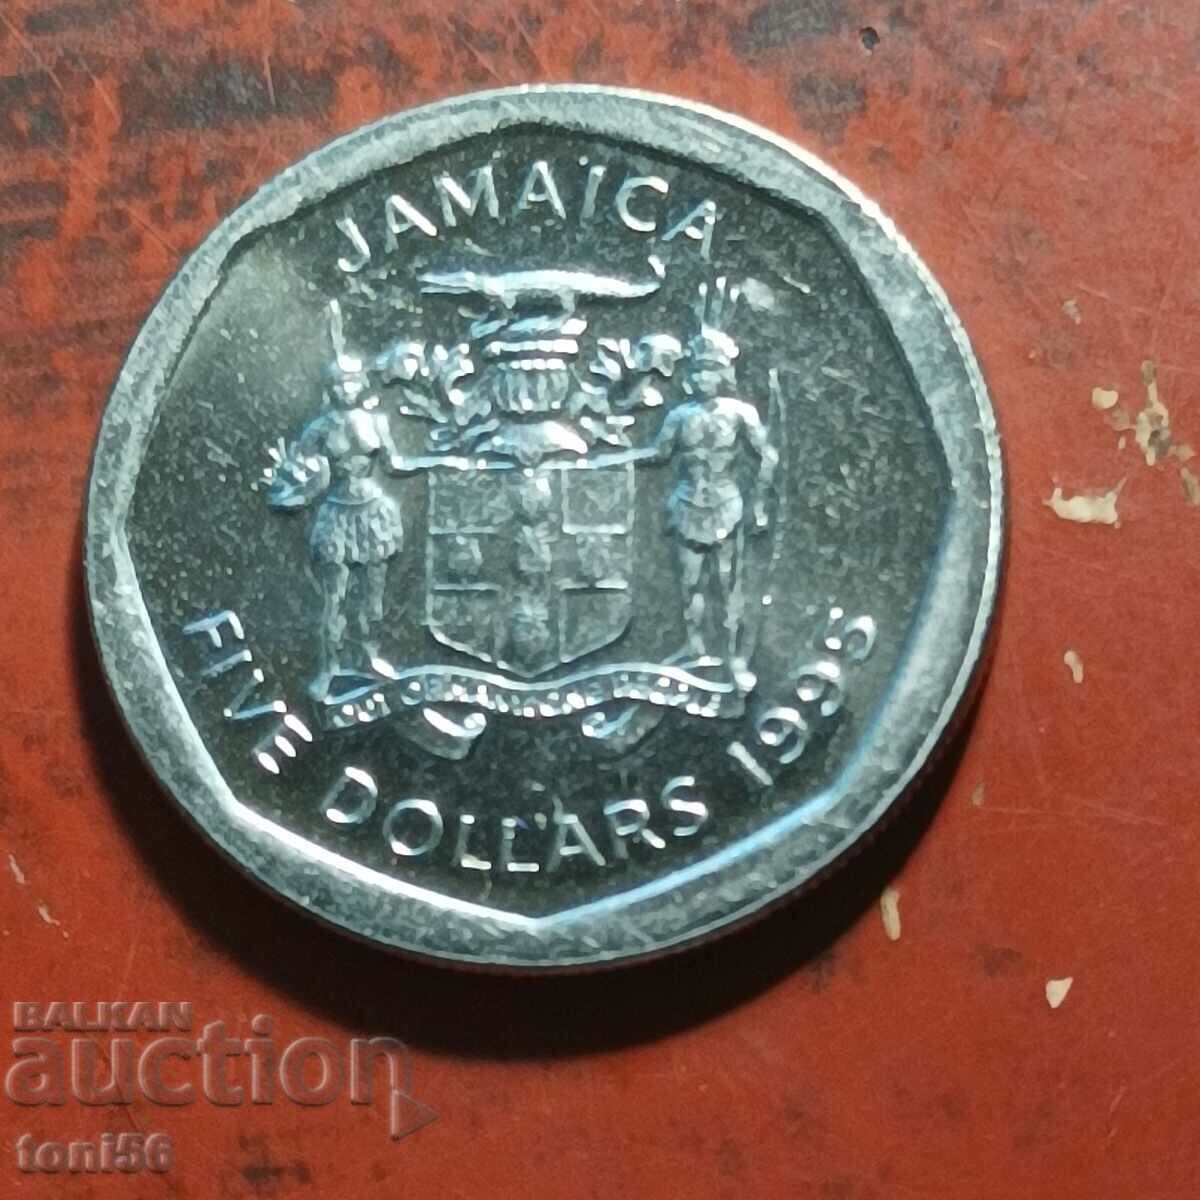 Jamaica $5 1995 UNC